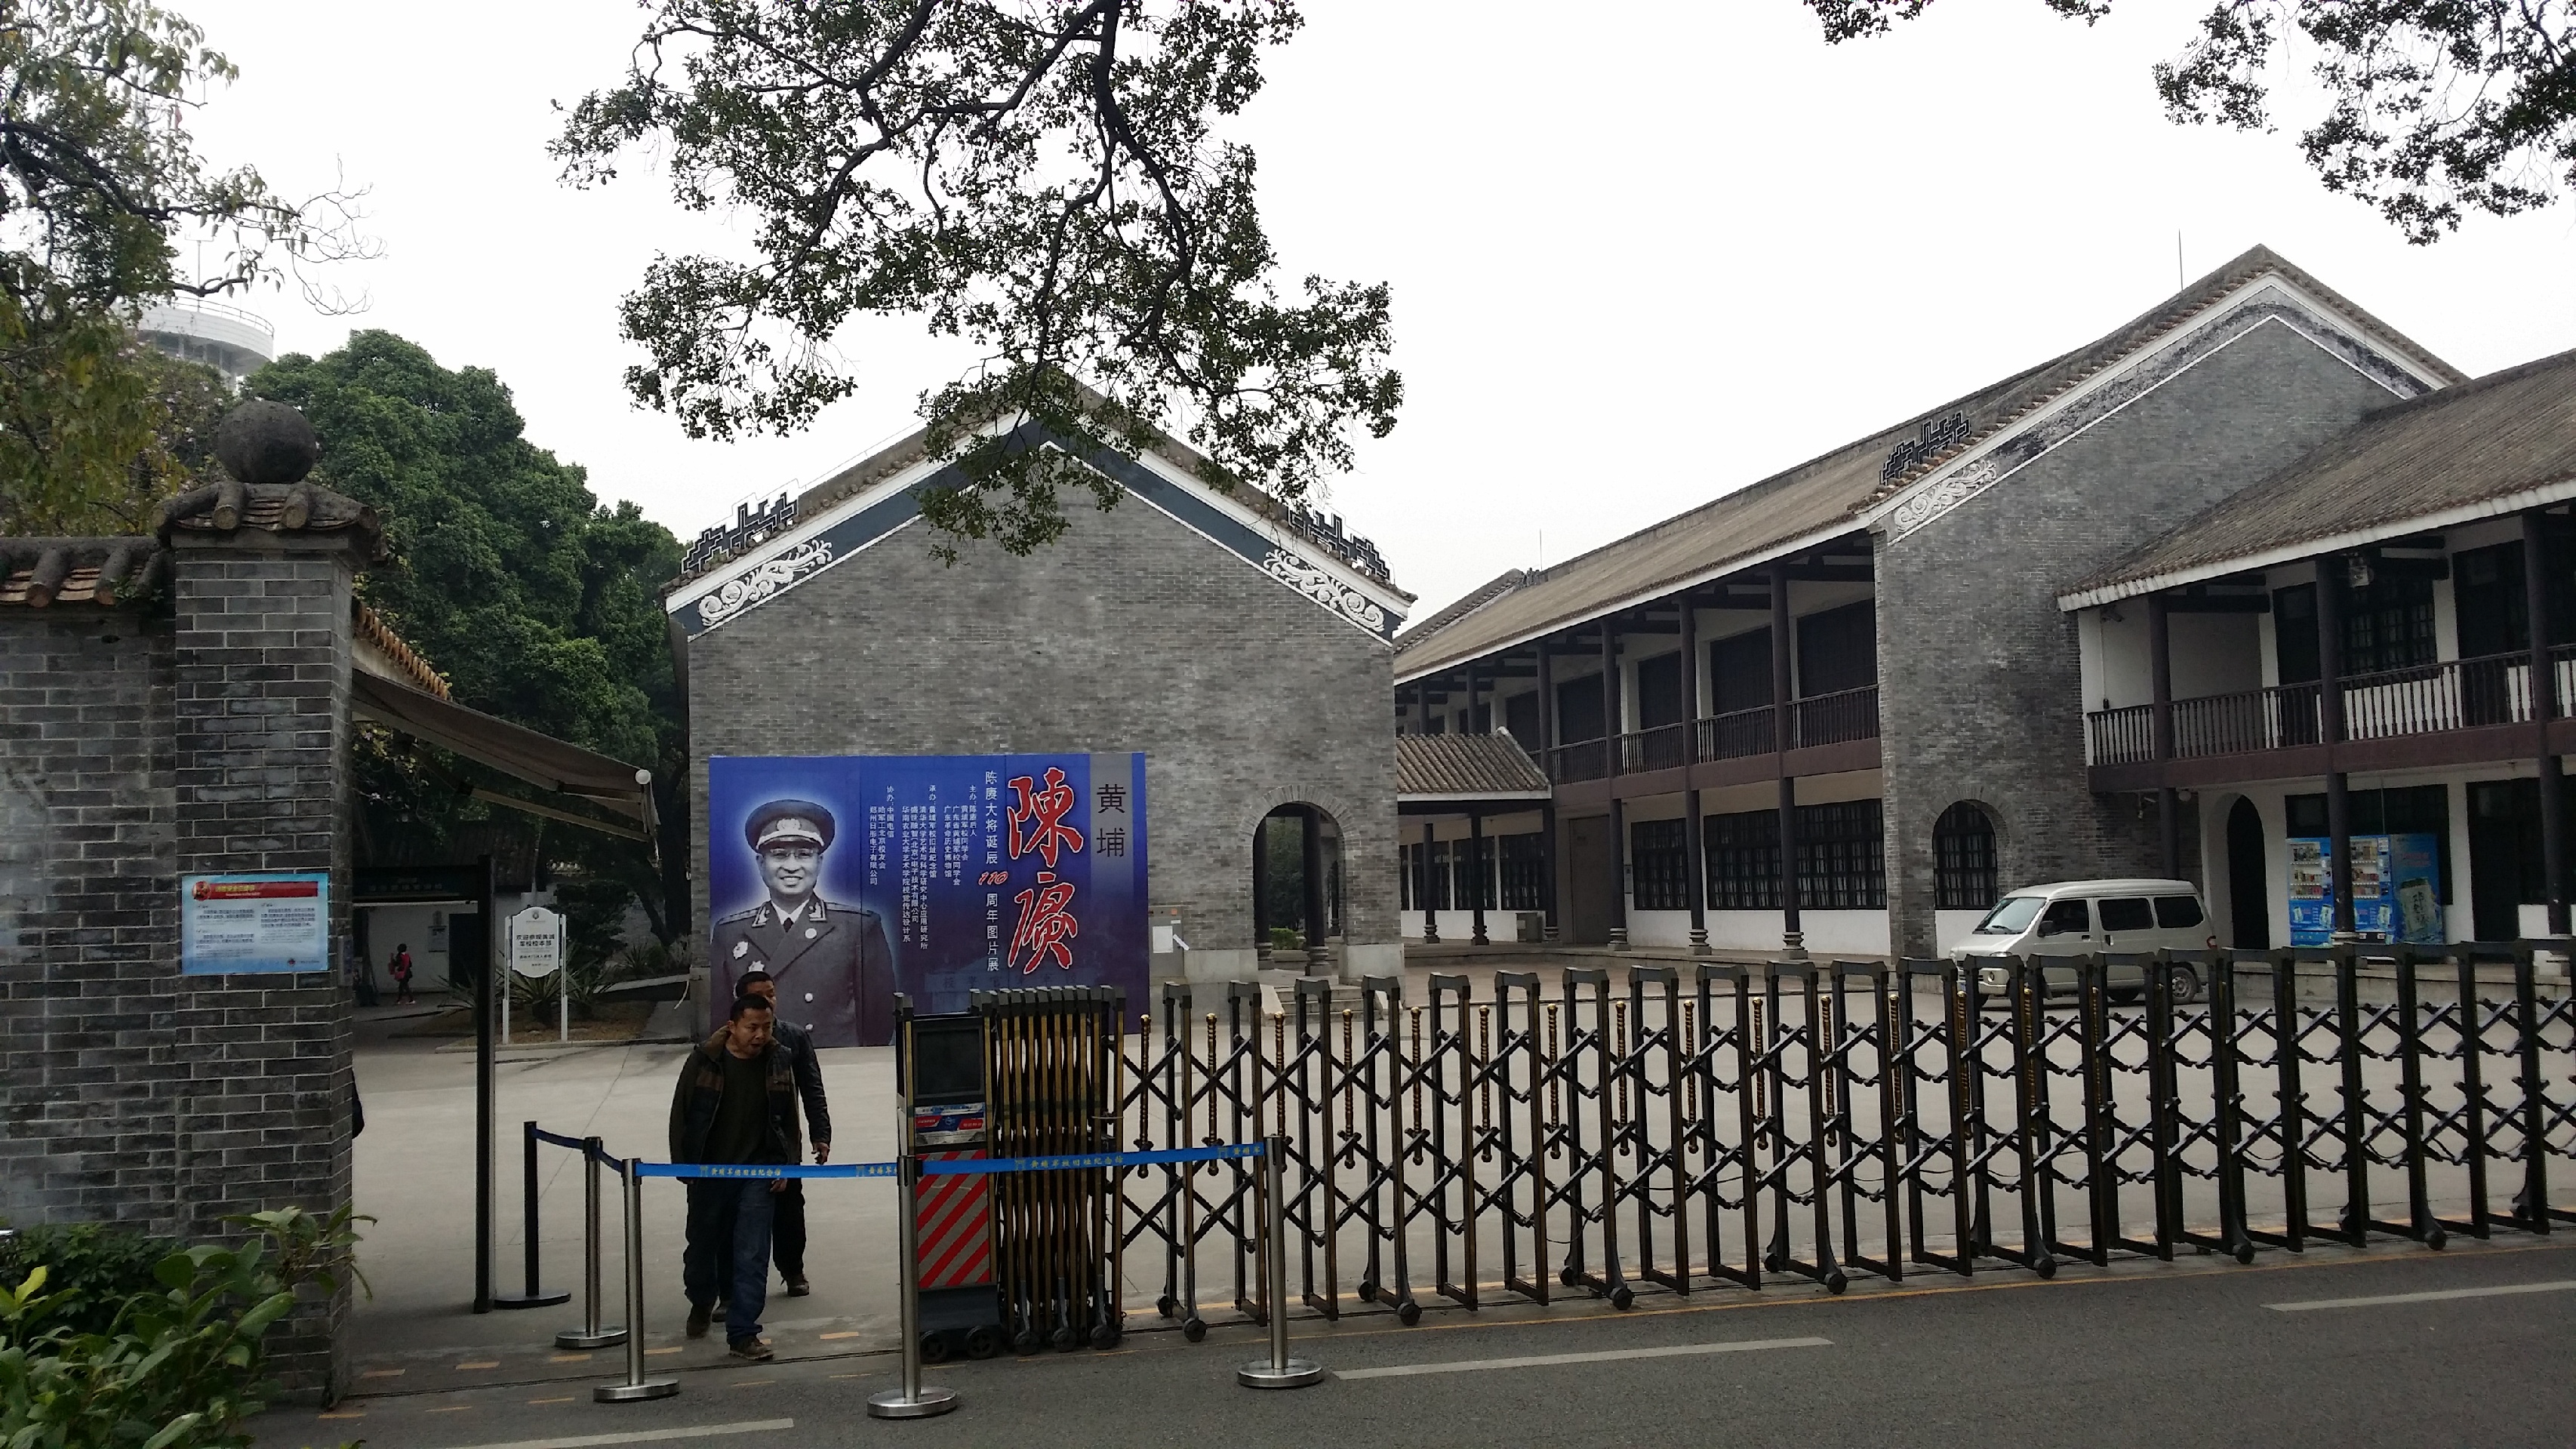 黄埔军校-深刻影响了国共两党和中国革命进程的地方